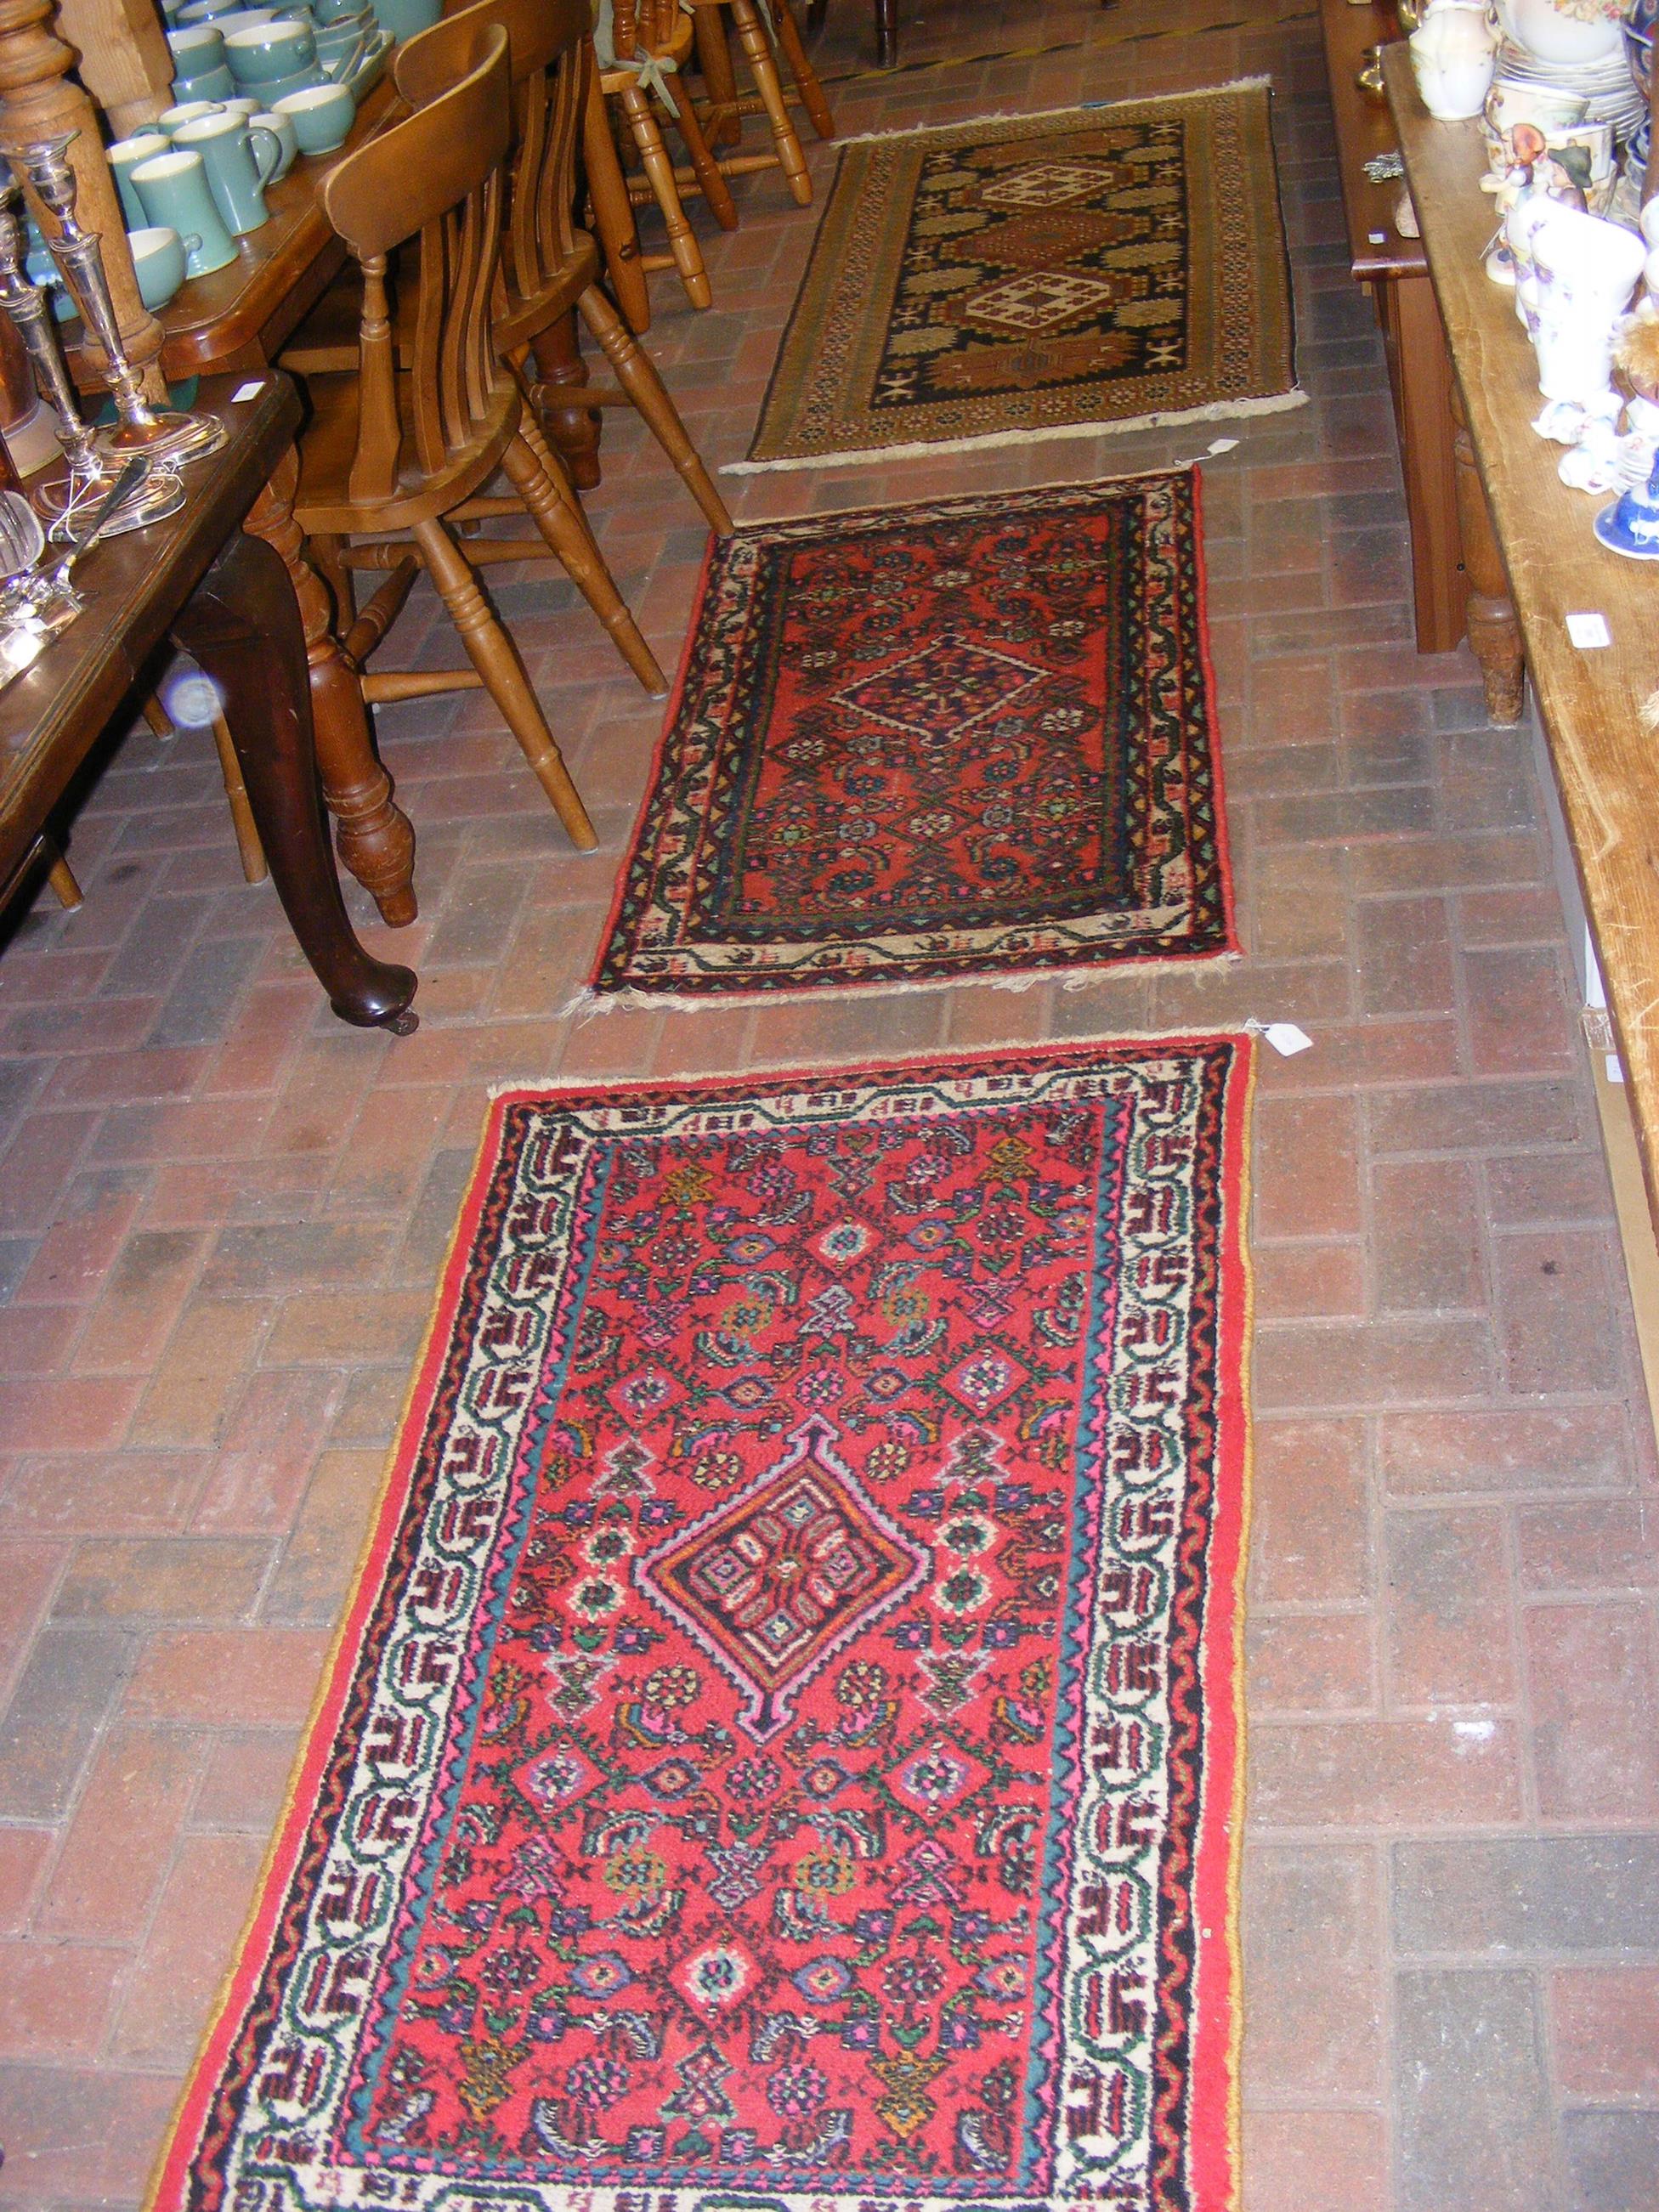 Three Iranian rugs